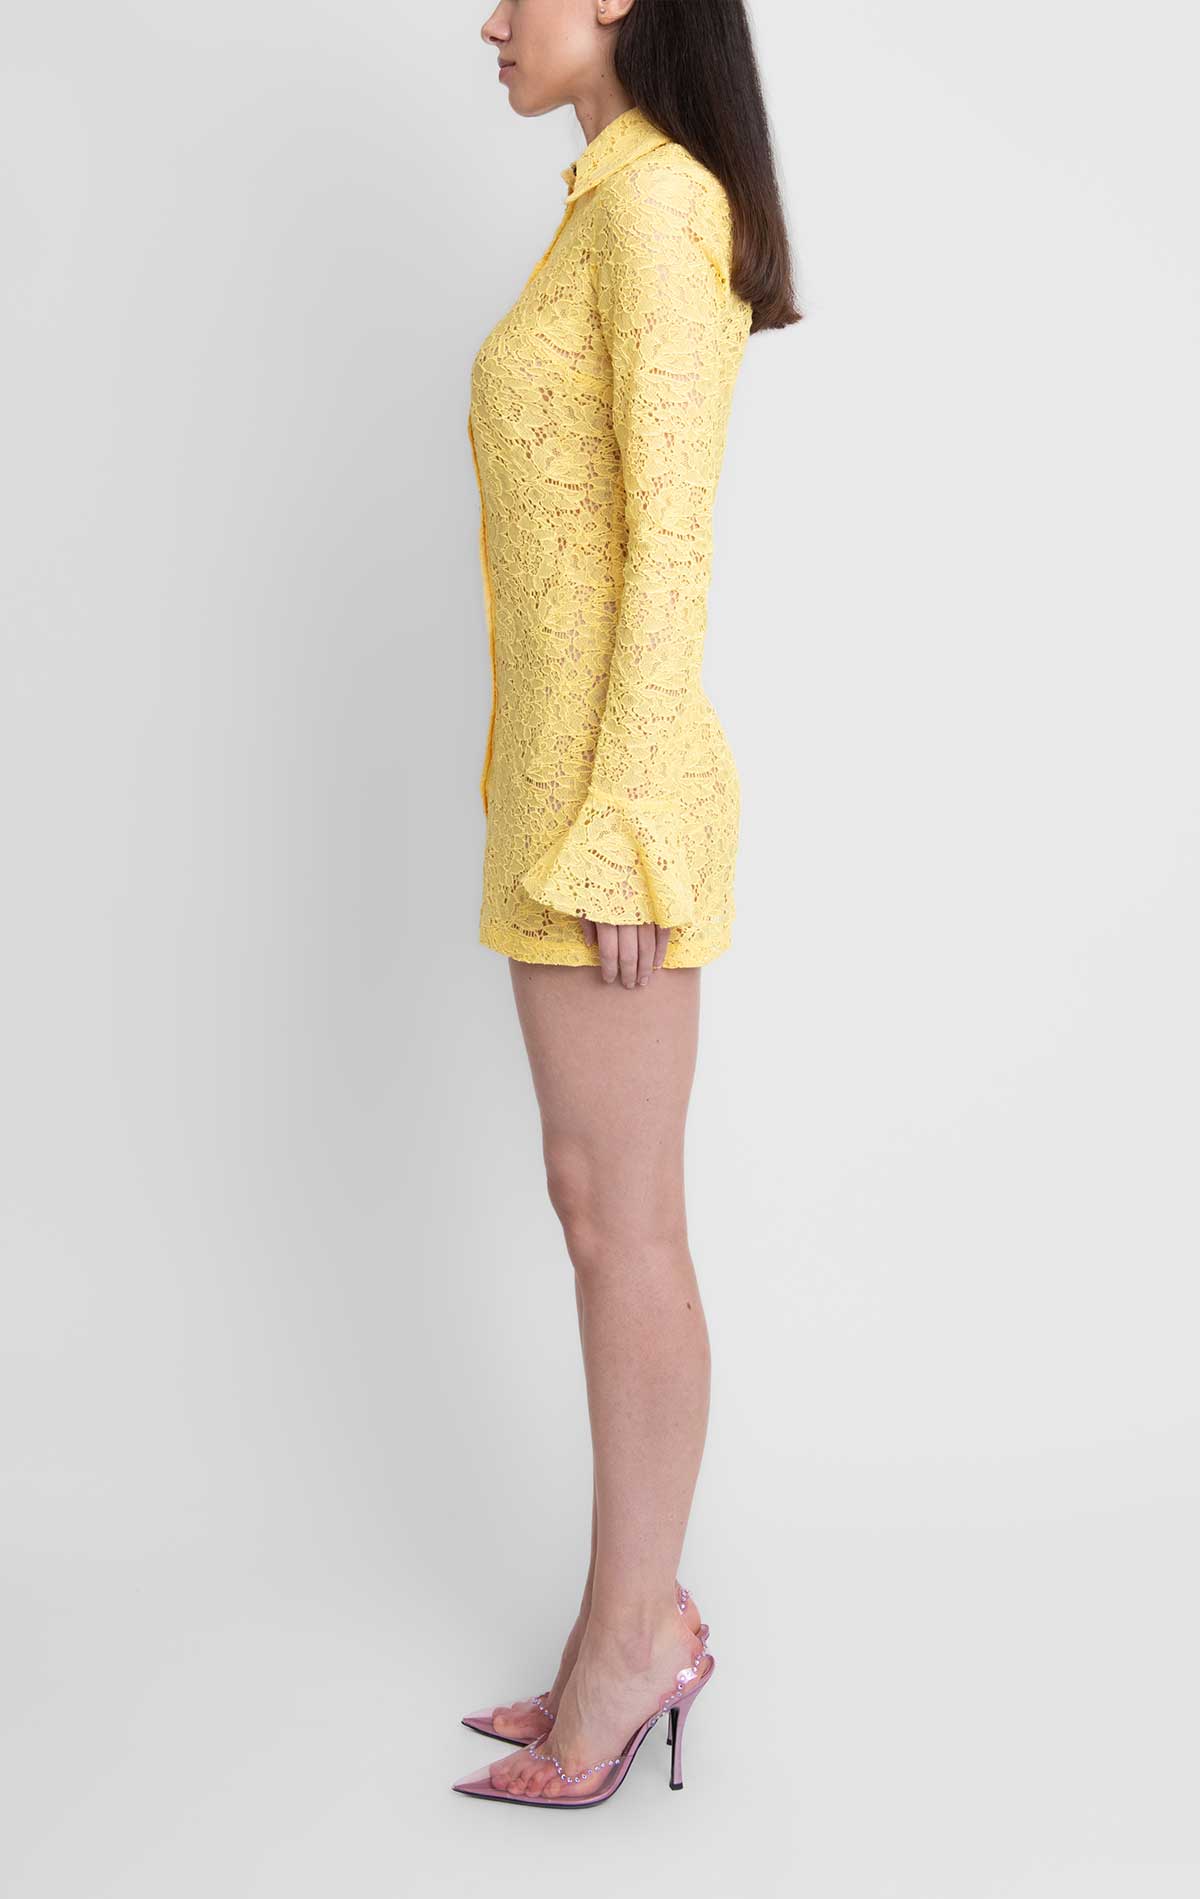 Irene Dress Yellow Lace - Silvia Astore